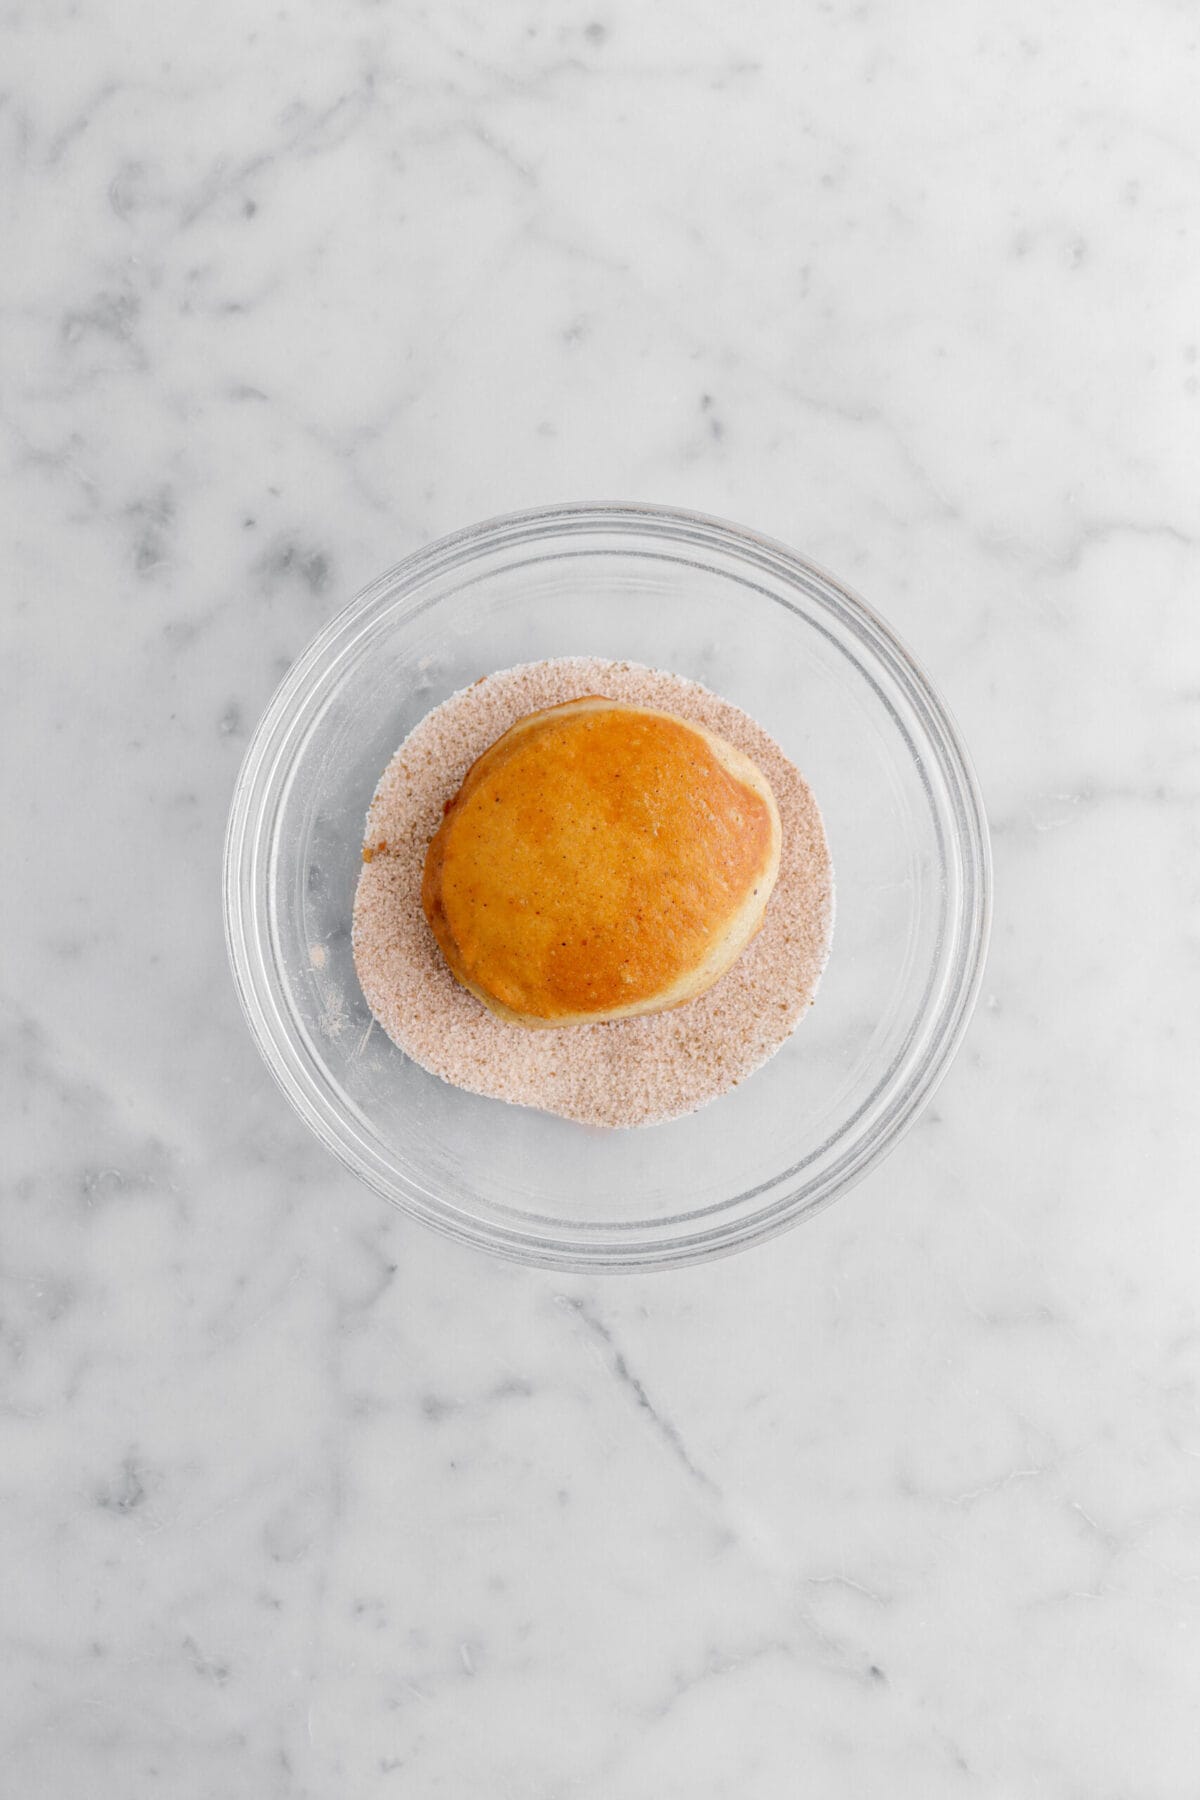 doughnut in spiced sugar mixture in glass bowl.